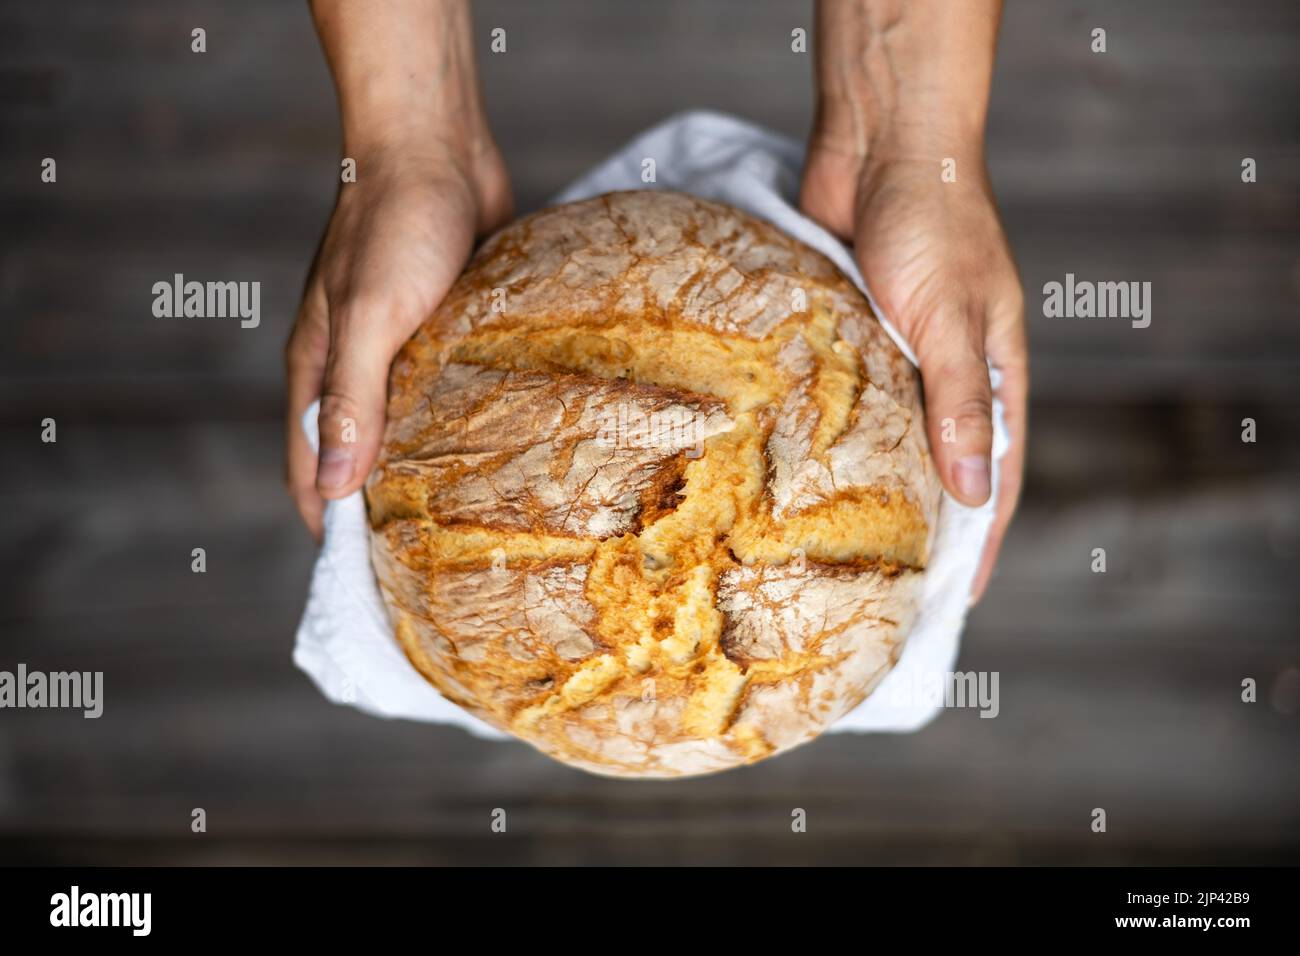 Pane tradizionale lievitato di pasta madre in panetteria mani su un rustico tavolo di legno. Fotografia alimentare sana Foto Stock